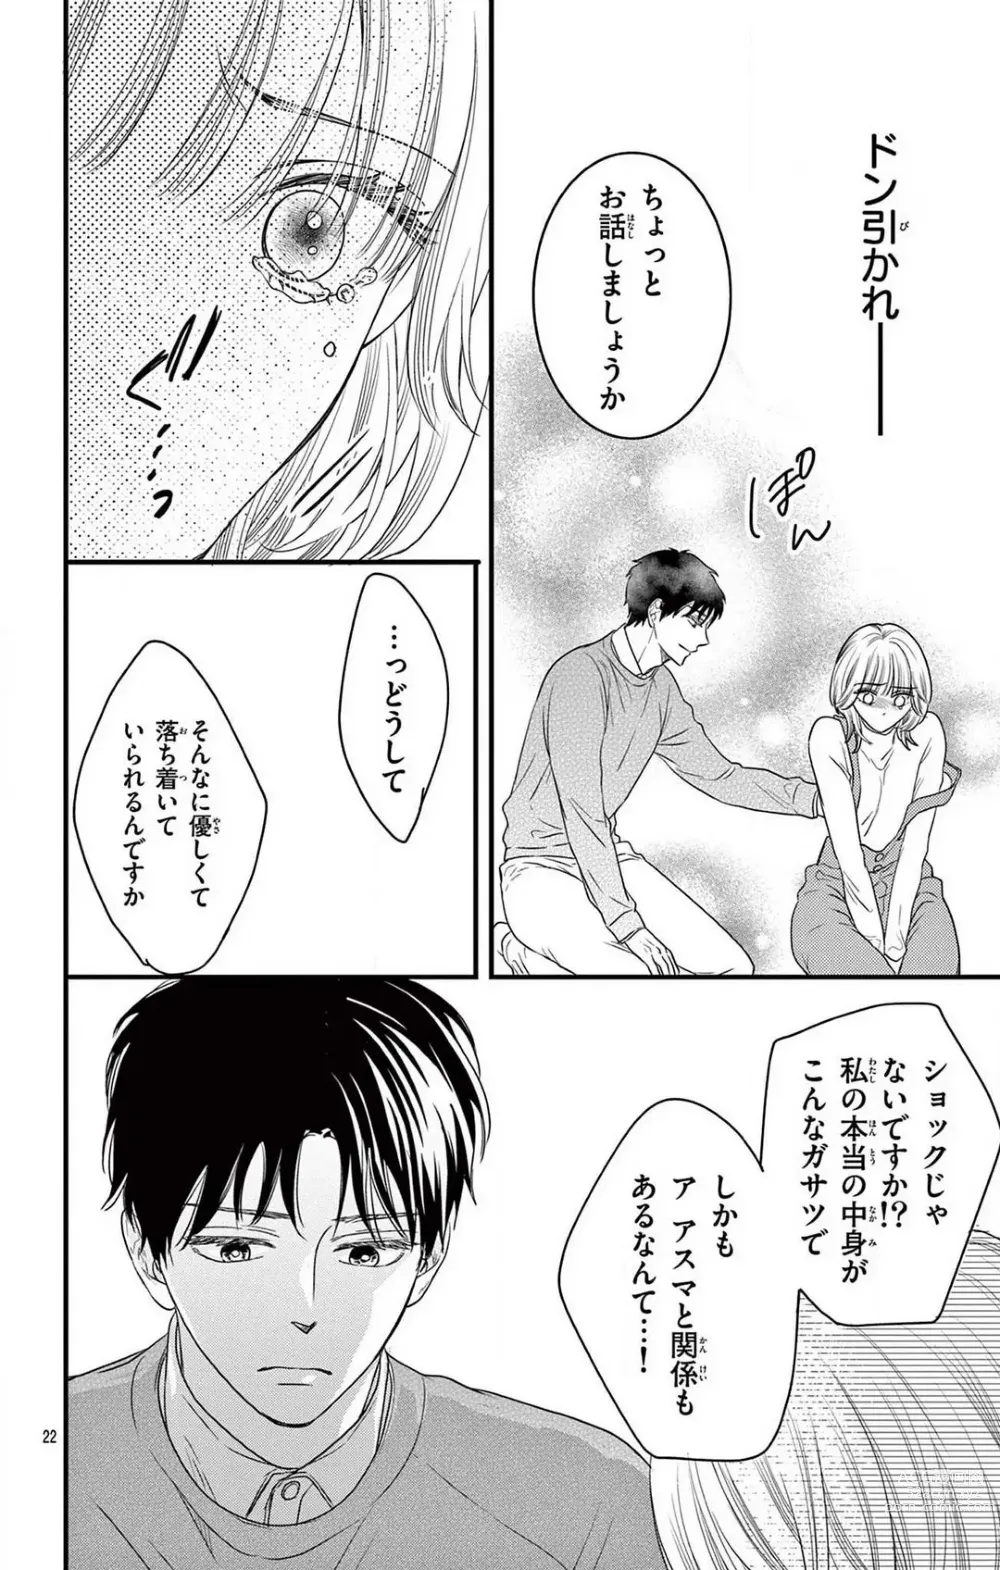 Page 228 of manga Kuzu wa Kuzu Demo Kao ga ii Kuzu 1-7